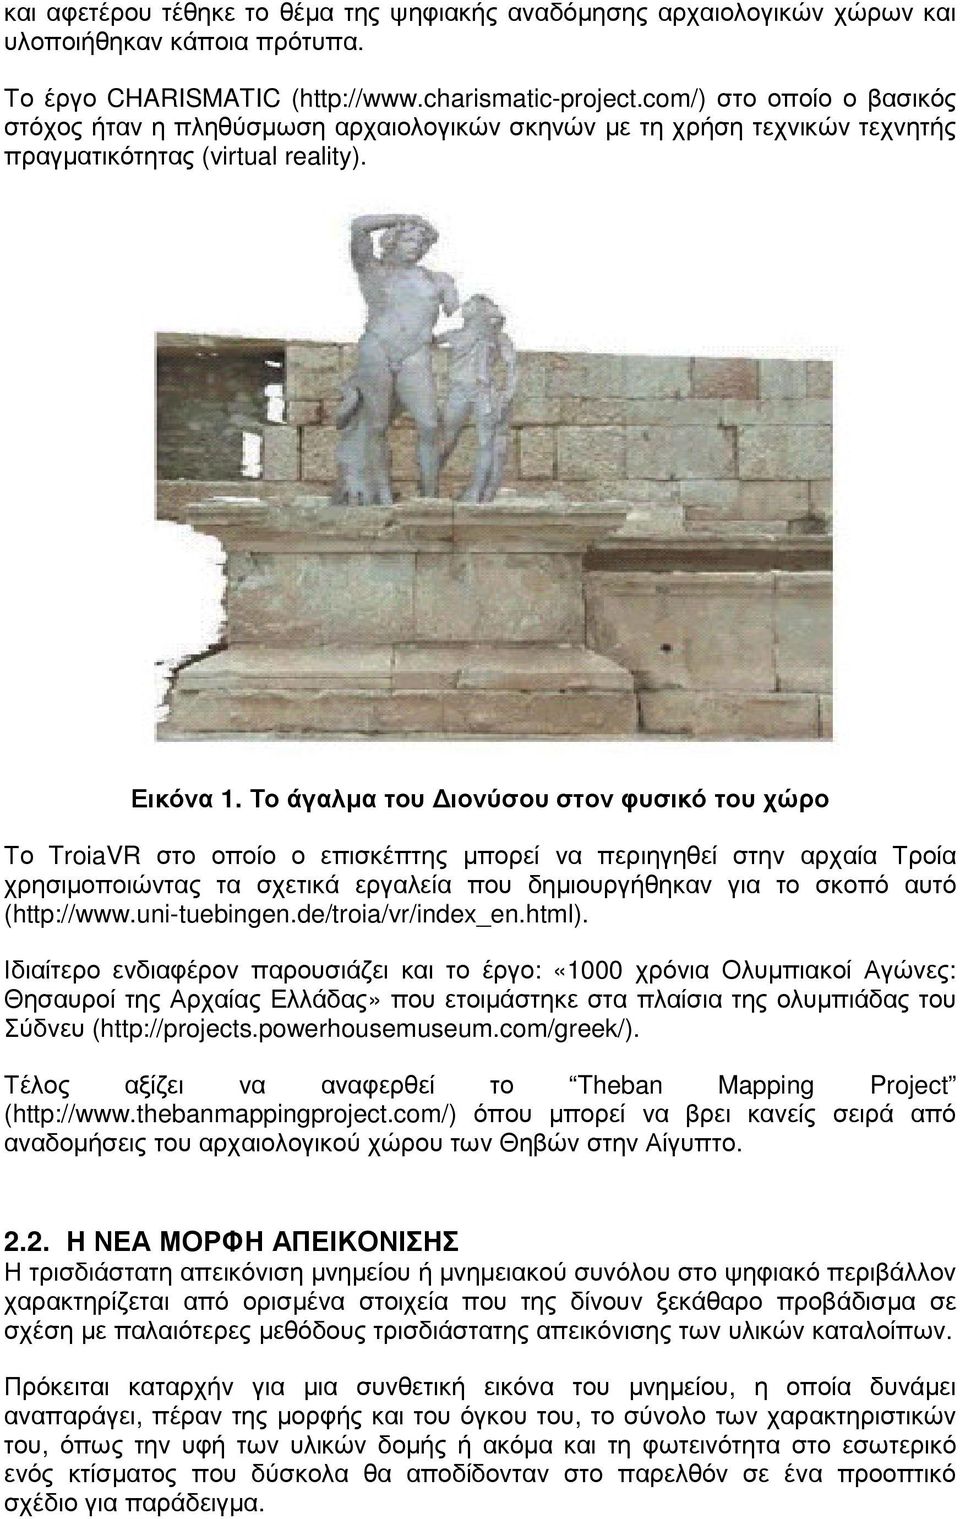 Το άγαλµα του ιονύσου στον φυσικό του χώρο Το TroiaVR στο οποίο ο επισκέπτης µπορεί να περιηγηθεί στην αρχαία Τροία χρησιµοποιώντας τα σχετικά εργαλεία που δηµιουργήθηκαν για το σκοπό αυτό